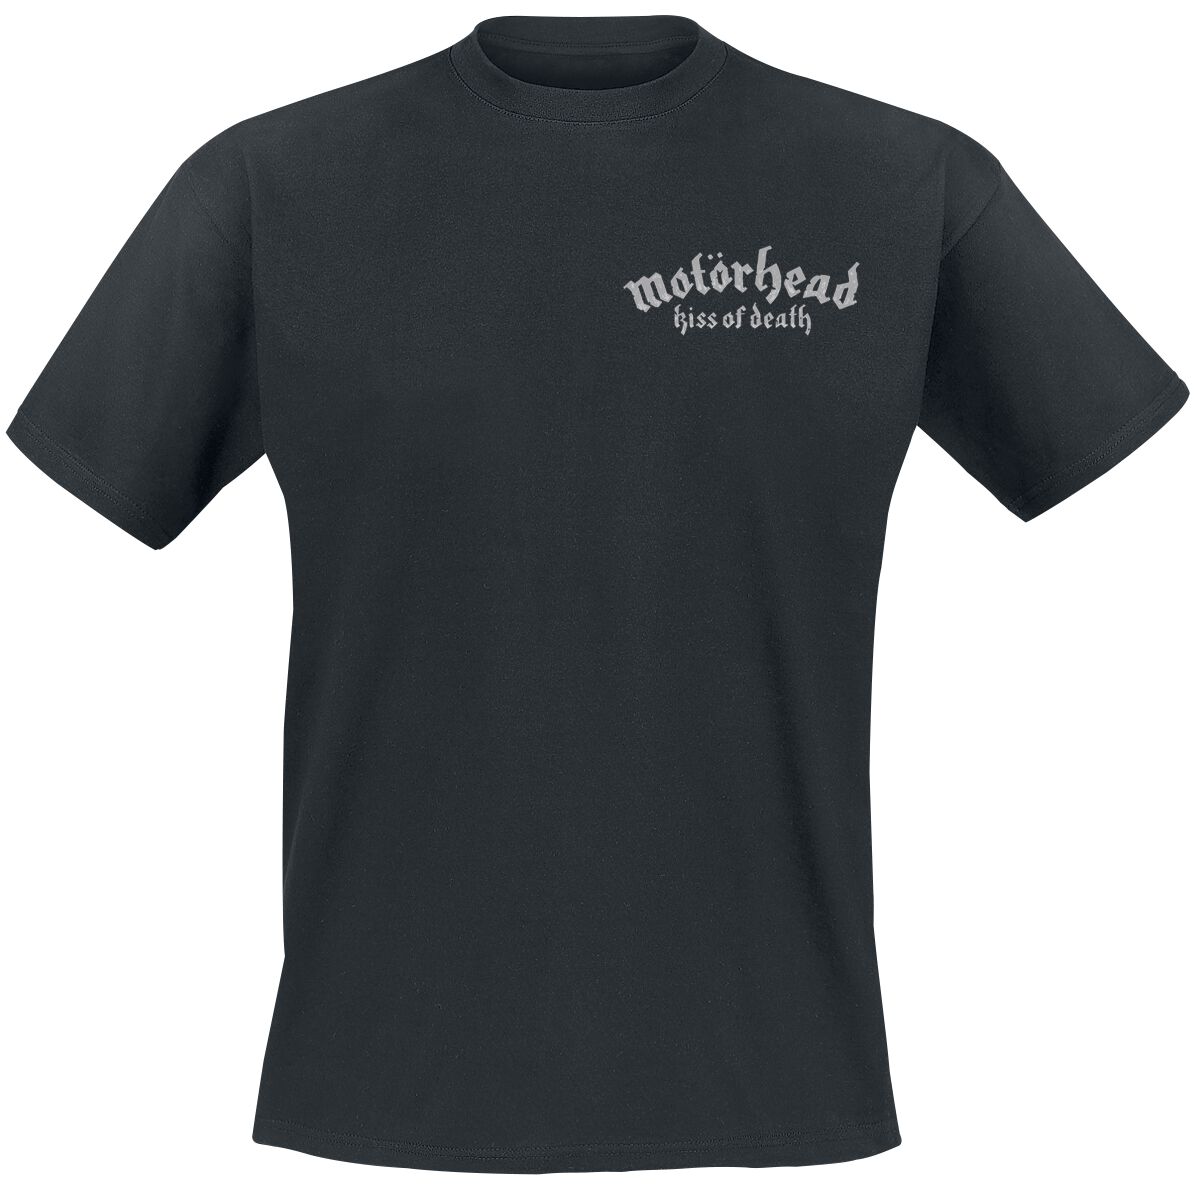 Motörhead T-Shirt - Kiss Of Death Bullet Circle V2 - S bis 4XL - für Männer - Größe S - schwarz  - Lizenziertes Merchandise!